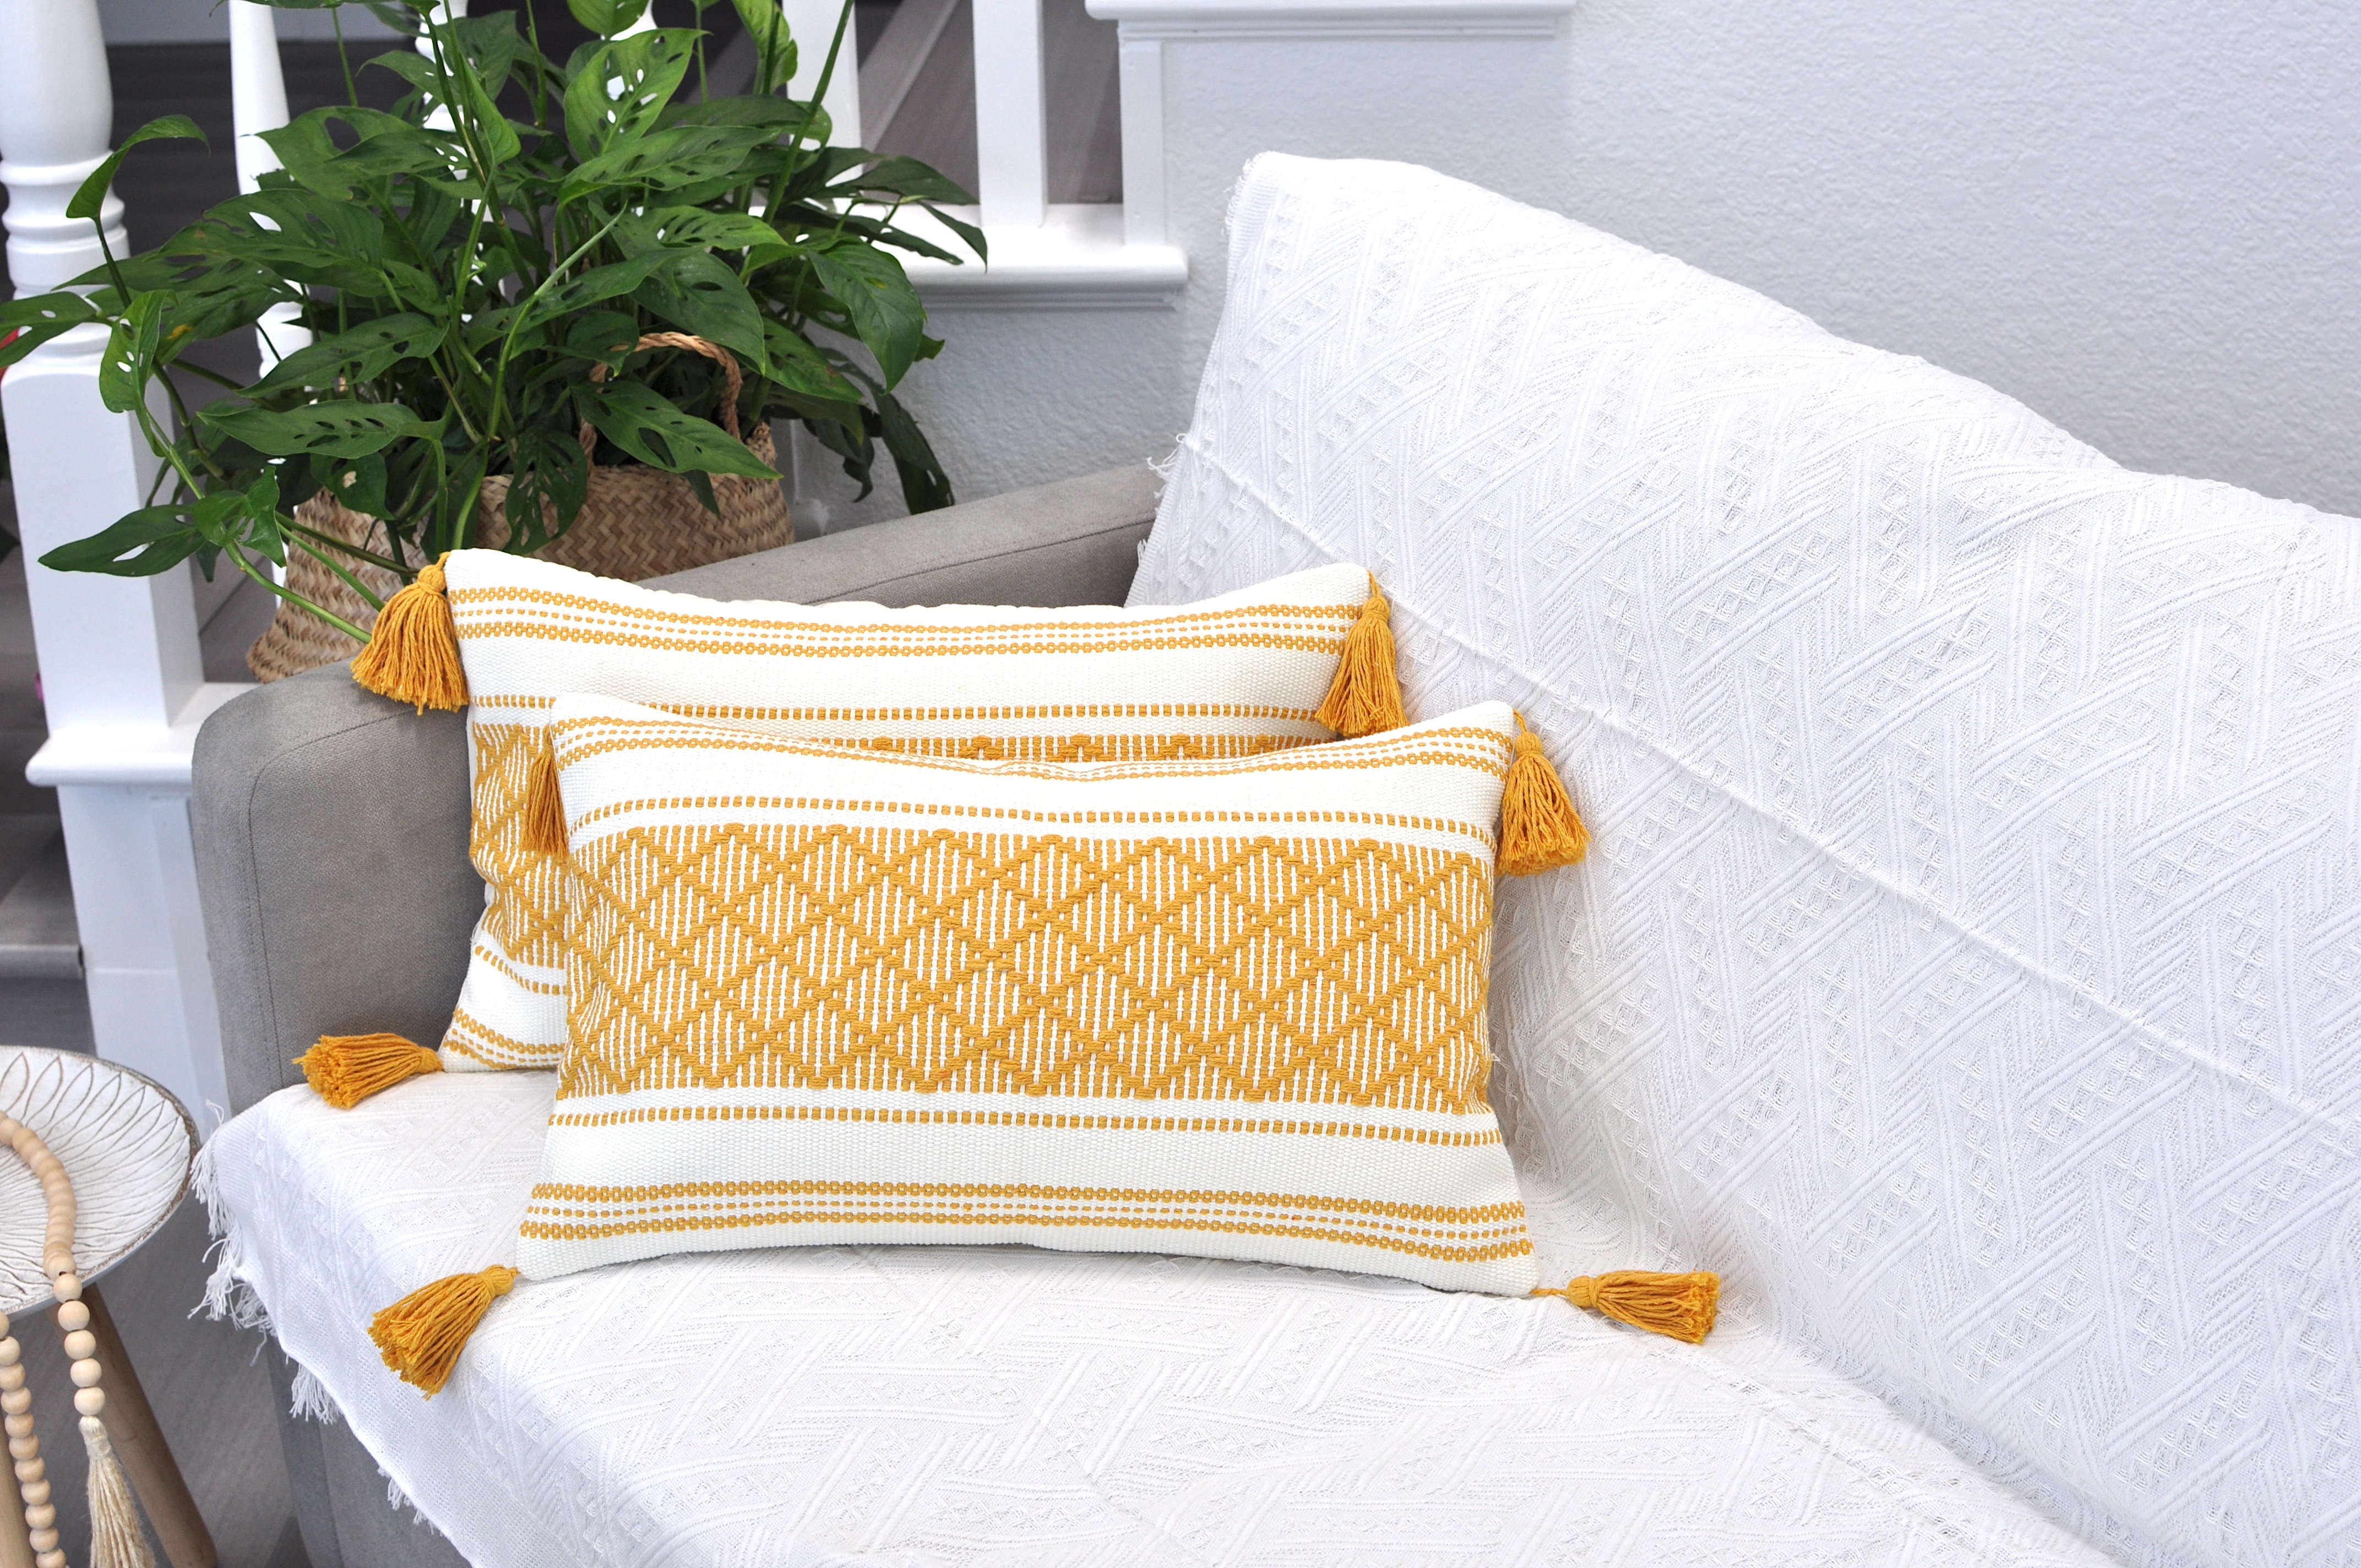 https://assets.wfcdn.com/im/40608206/compr-r85/2150/215059792/percey-boho-lumbar-pillow-covers-with-tassels-cotton-woven-rectangular-pillowcases.jpg